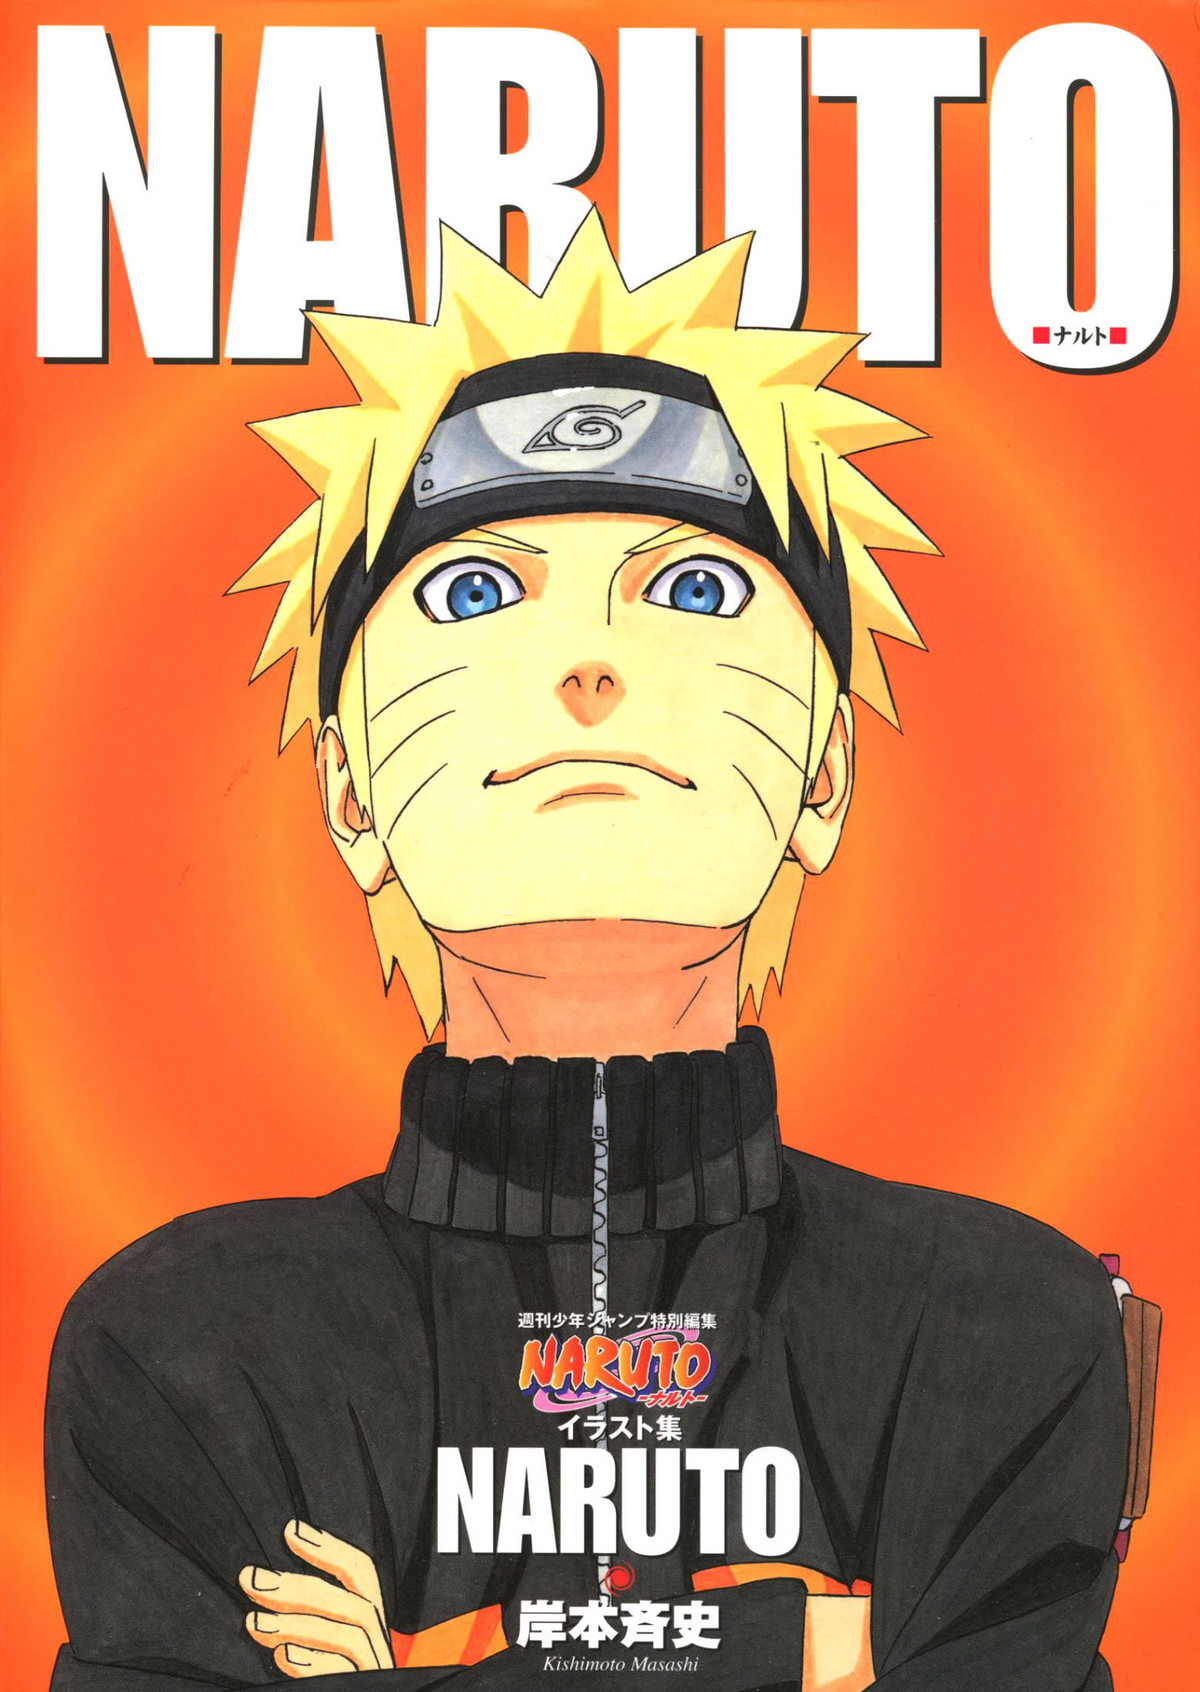 Tokyo Otaku Wiki] Naruto, Anime Gallery